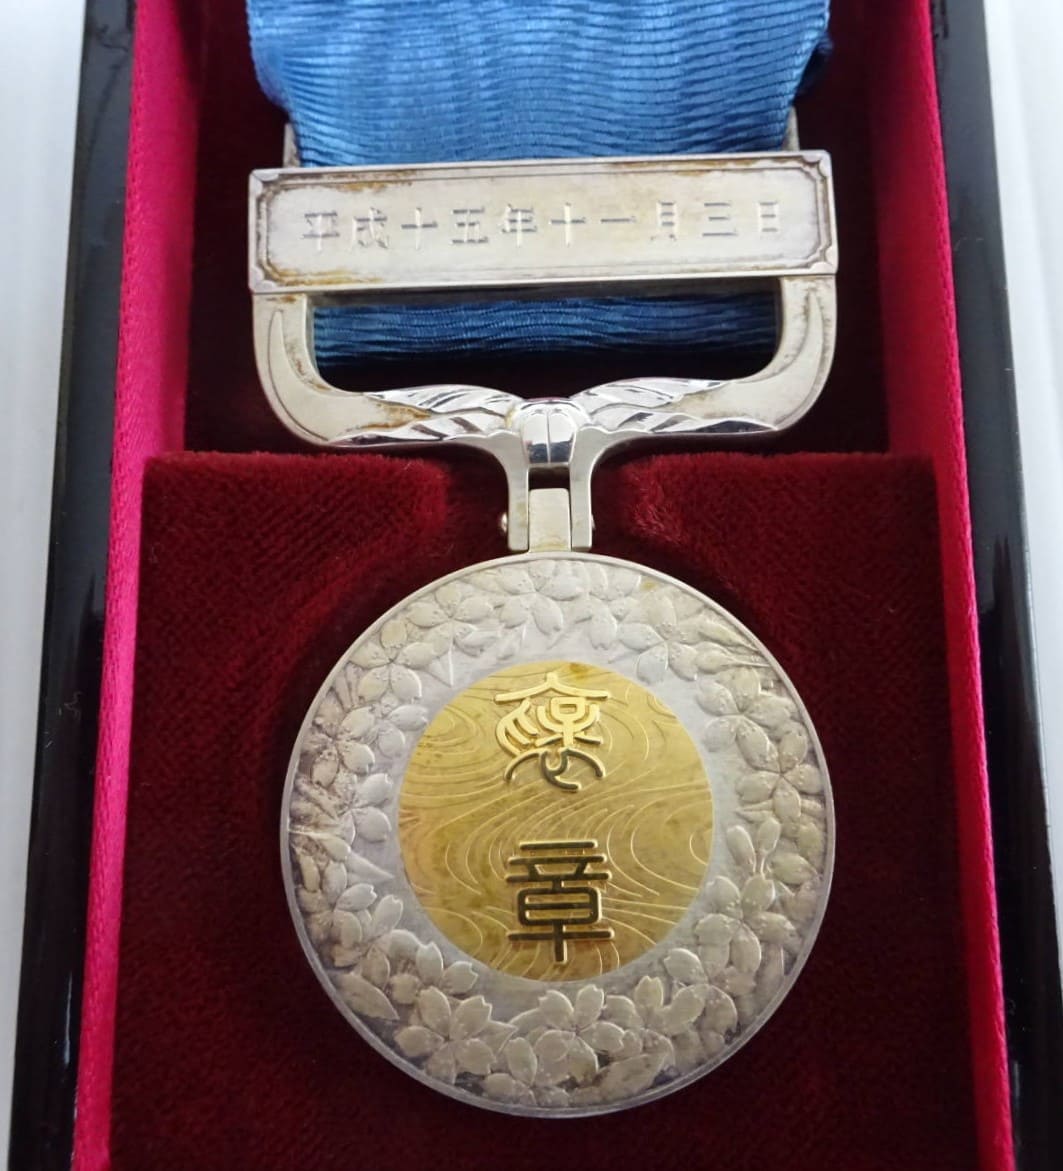 Blue Ribbon Medal of Honor  2003.jpg